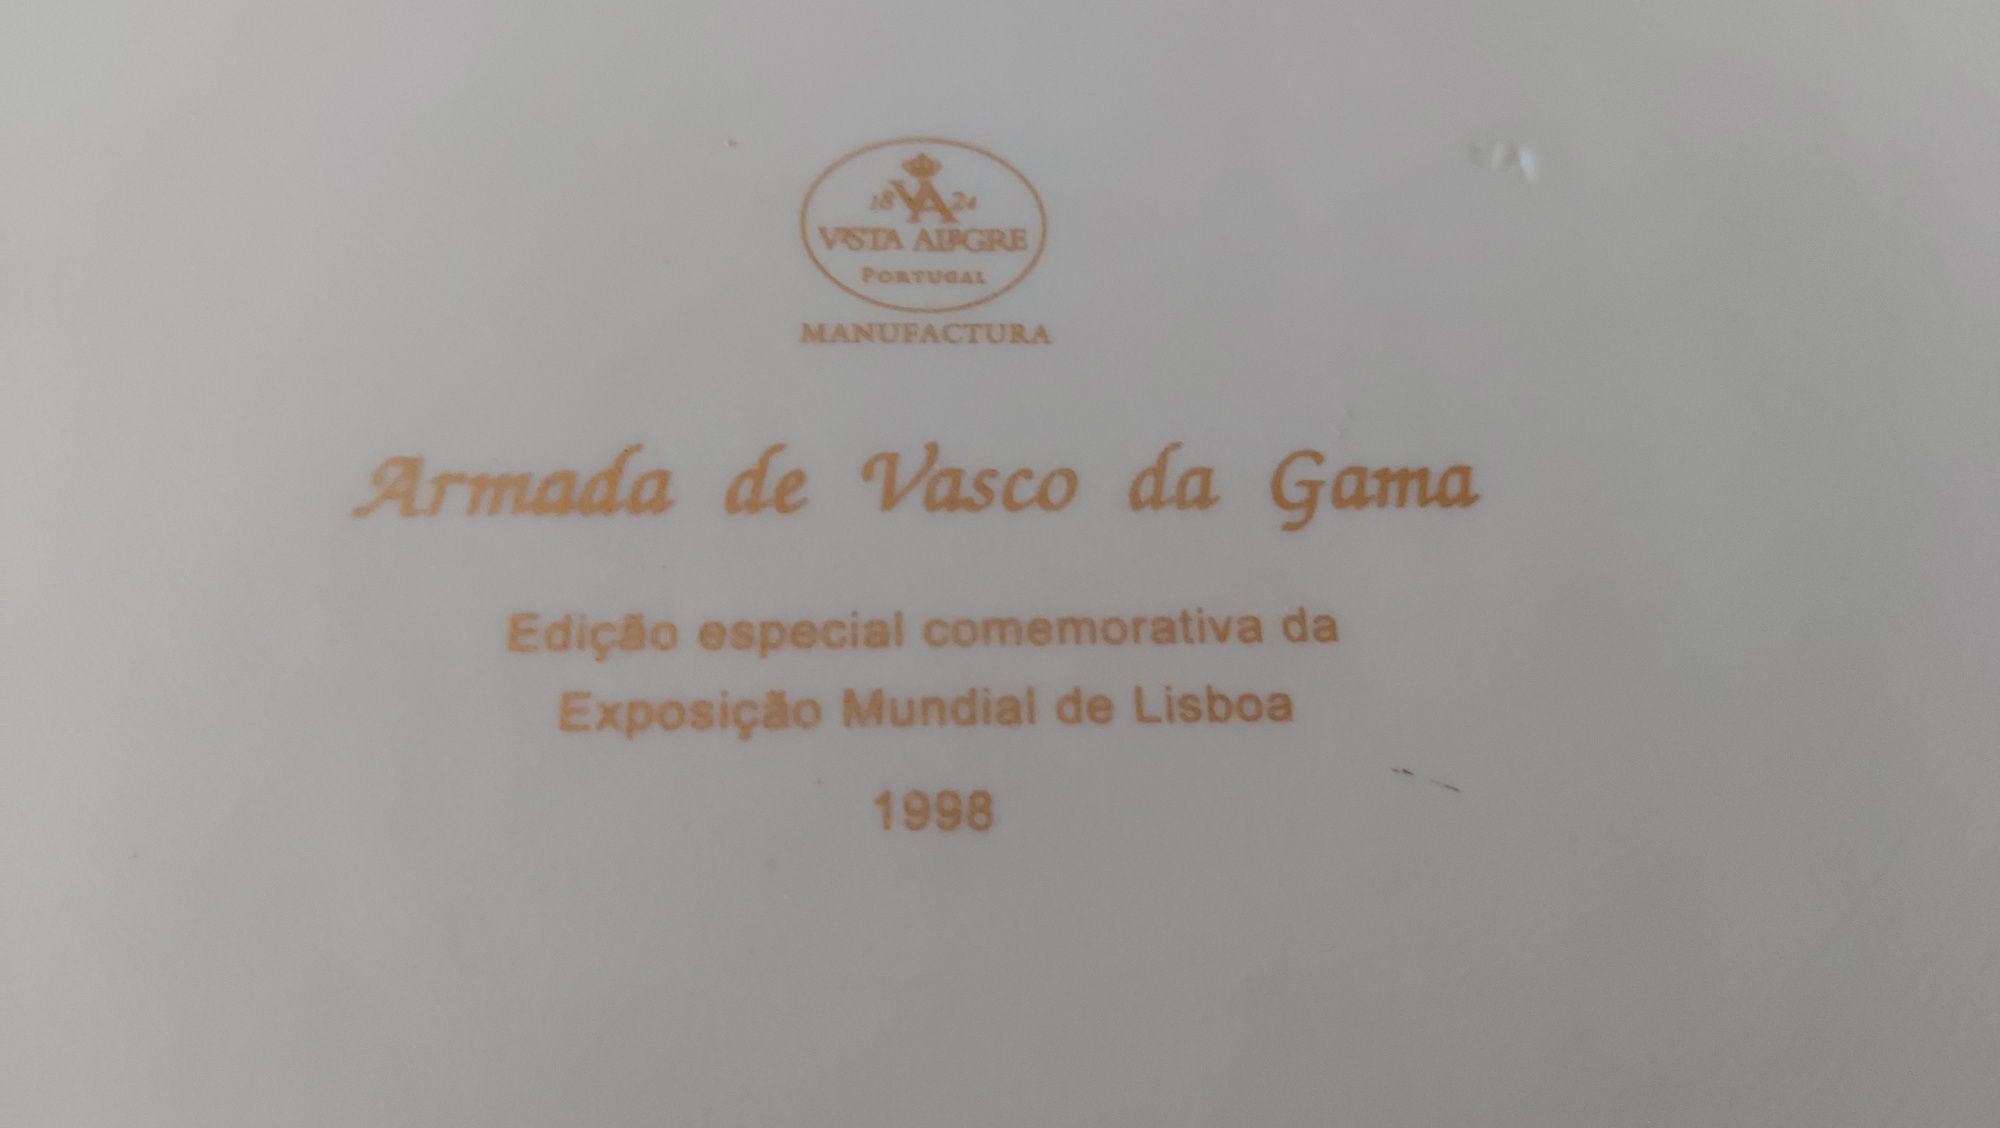 Bandeja "Armada de Vasco da Gama" da Vista Alegre em porcelana